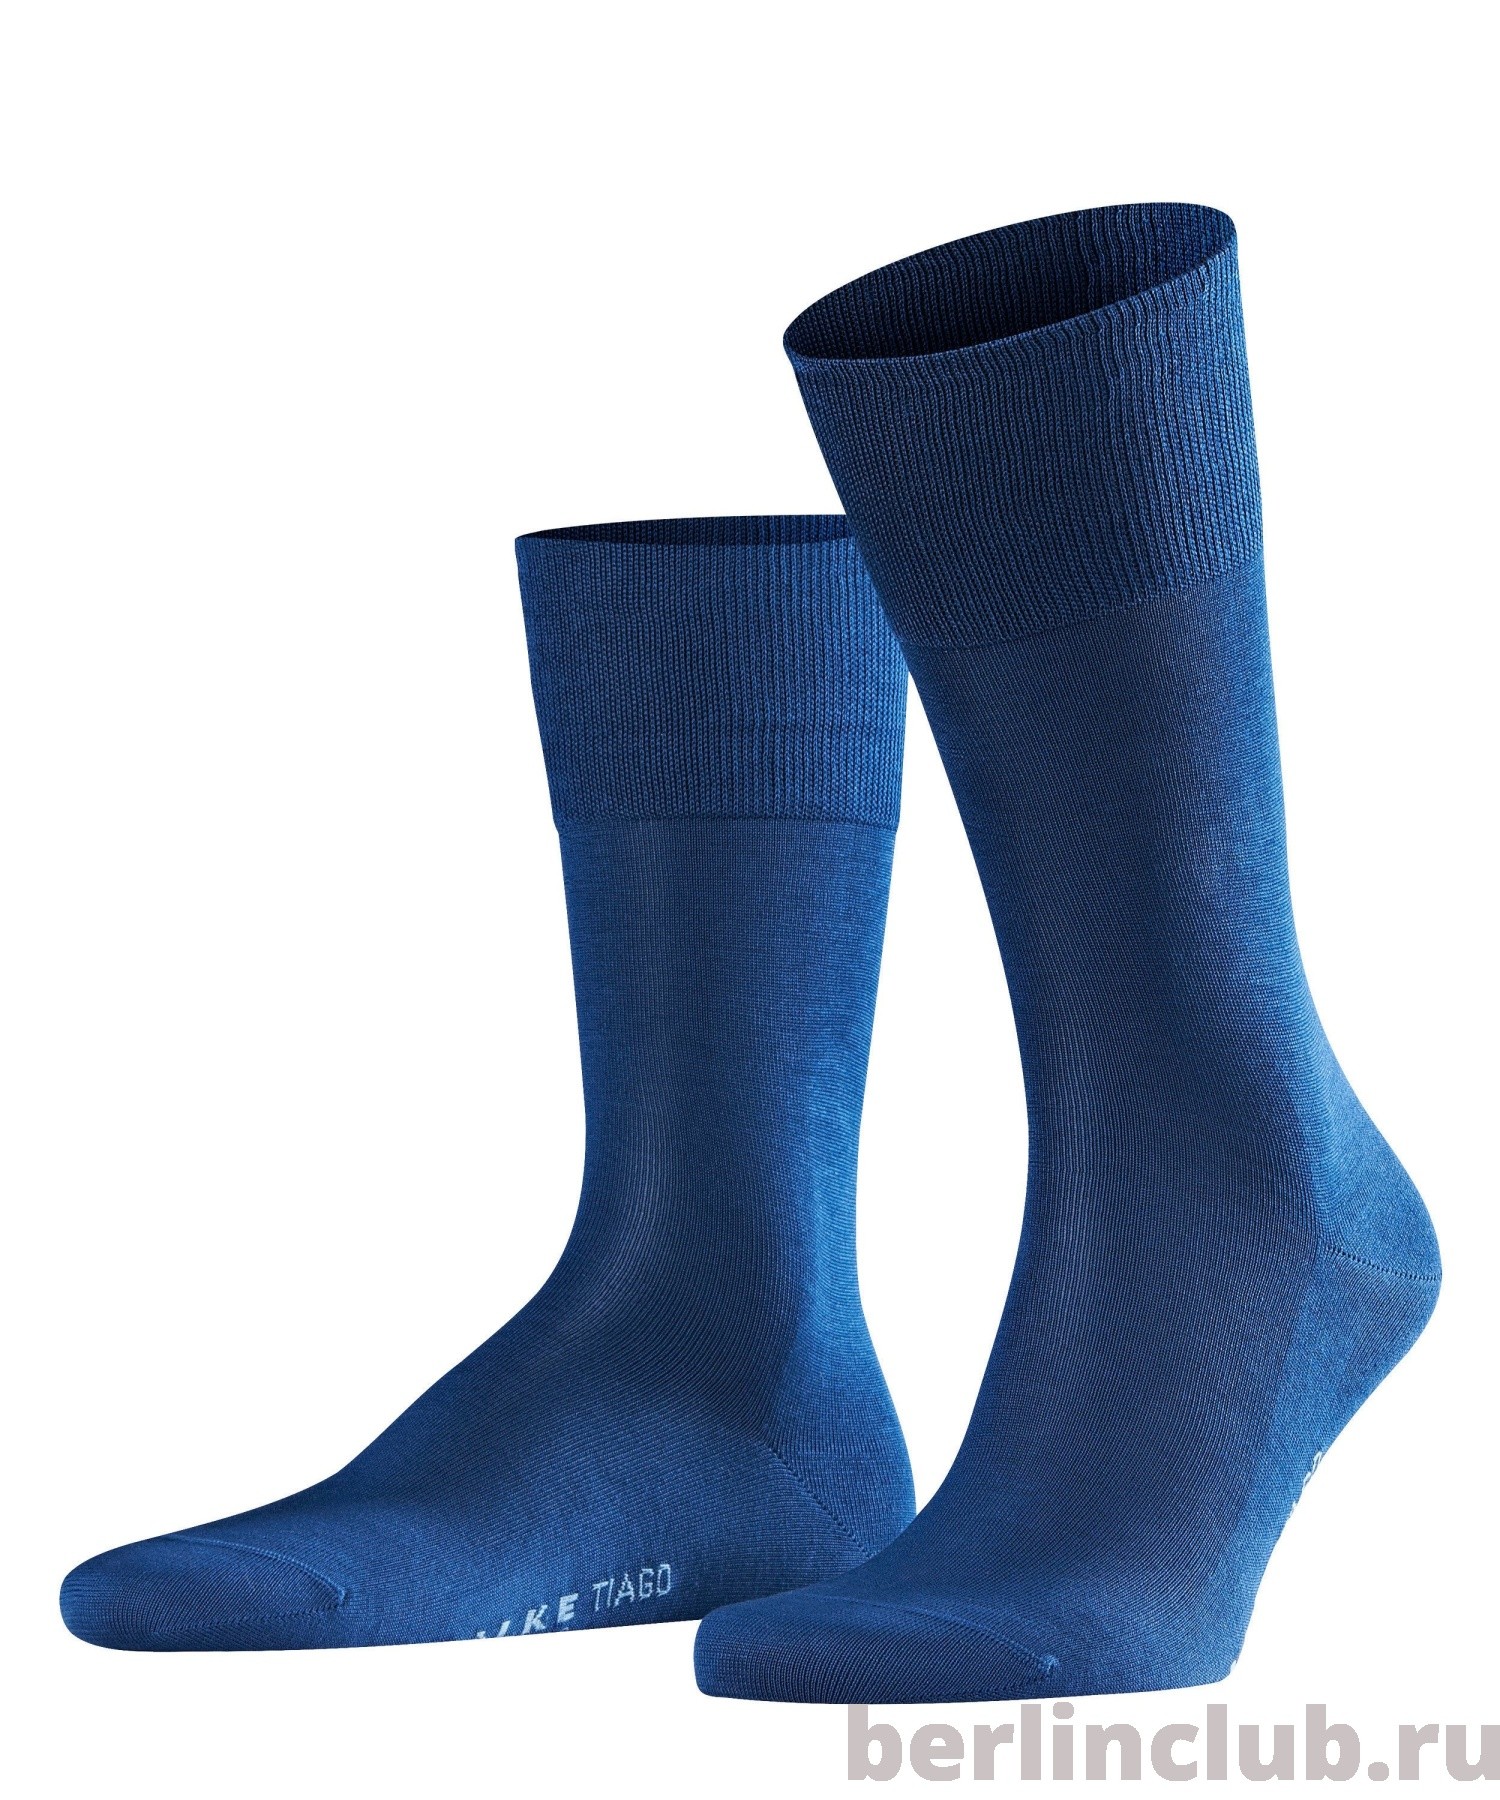 Хлопковые носки FALKE Tiago 14662 6000 - купить с доставкой по России, оплата при получении